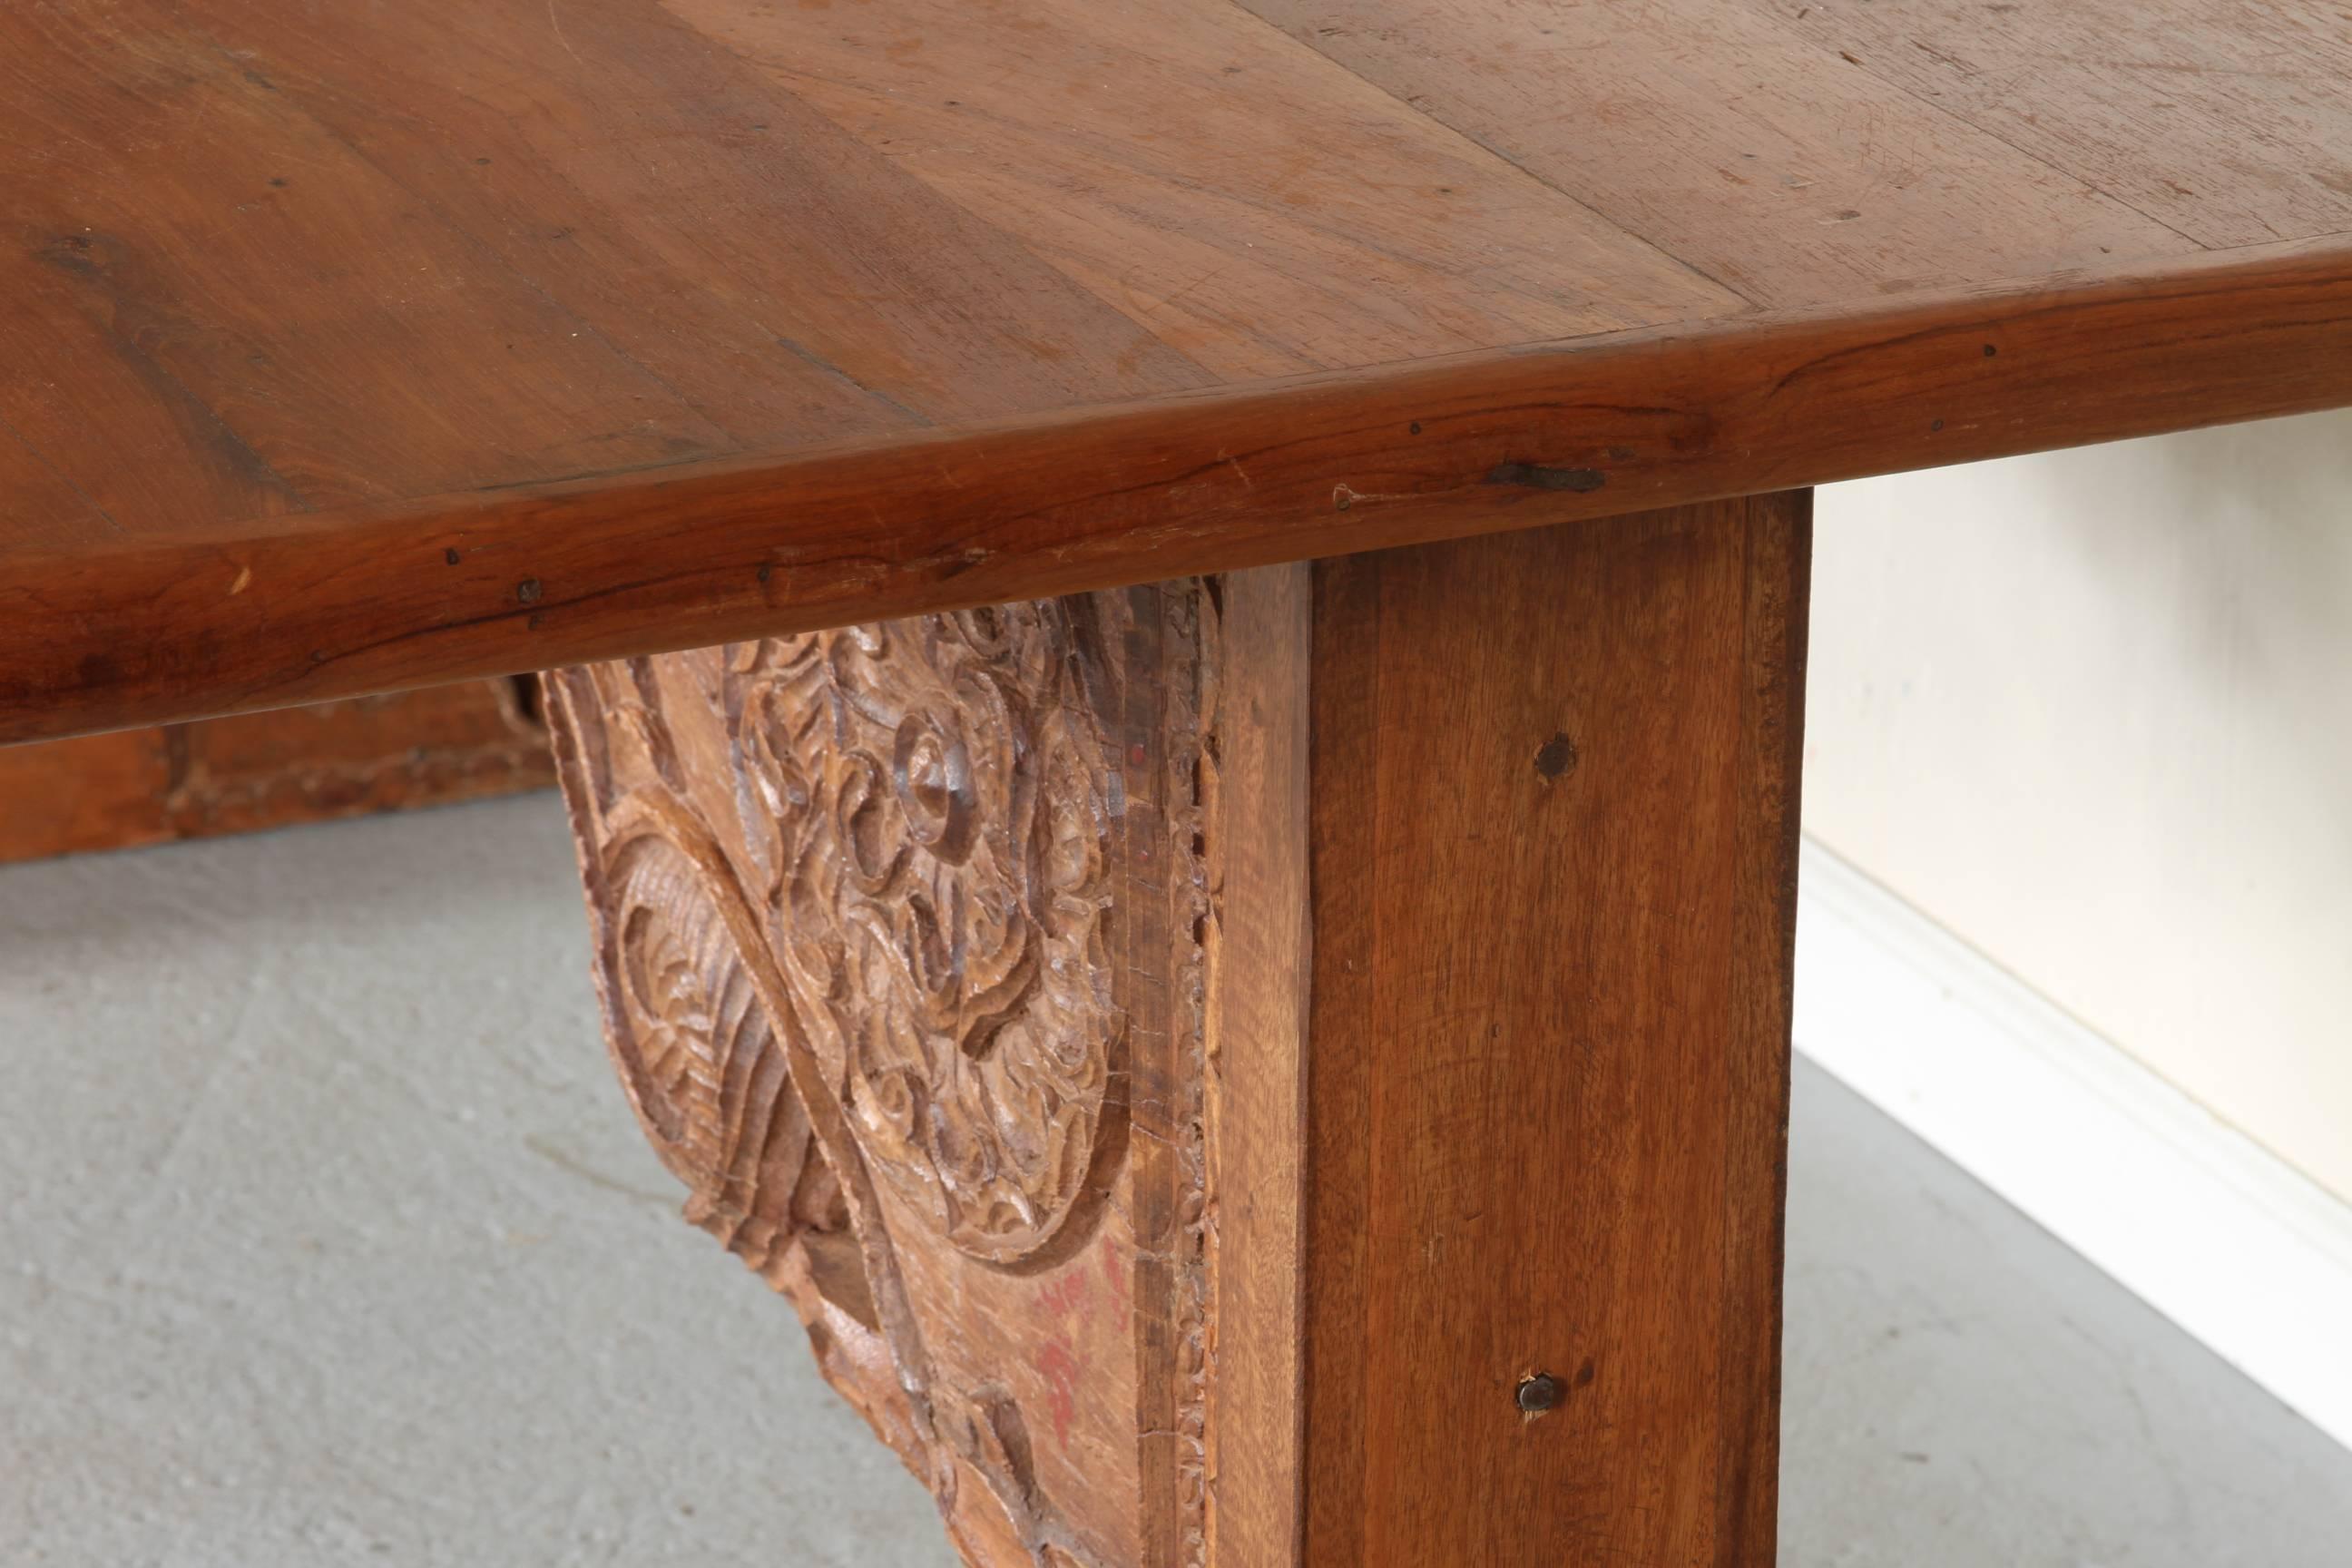 Une belle grande table à tréteaux en bois dur indien. Les supports massifs des tréteaux, ainsi que le brancard, sont des éléments architecturaux anciens incorporés avec un design traditionnel sculpté à la main. La table est très solidement posée et